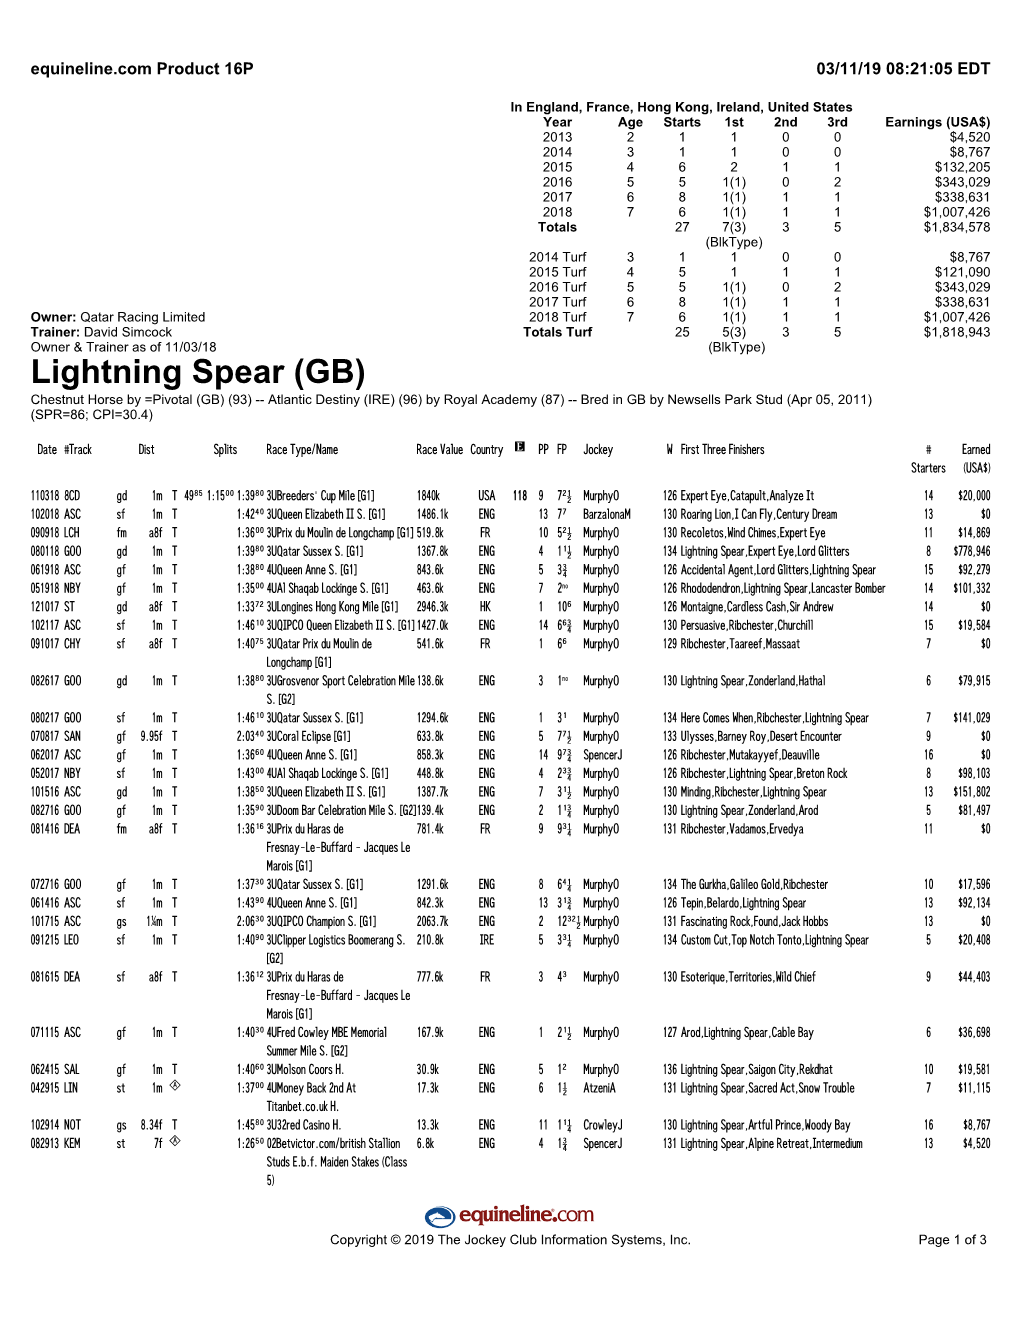 Lightning Spear (GB)